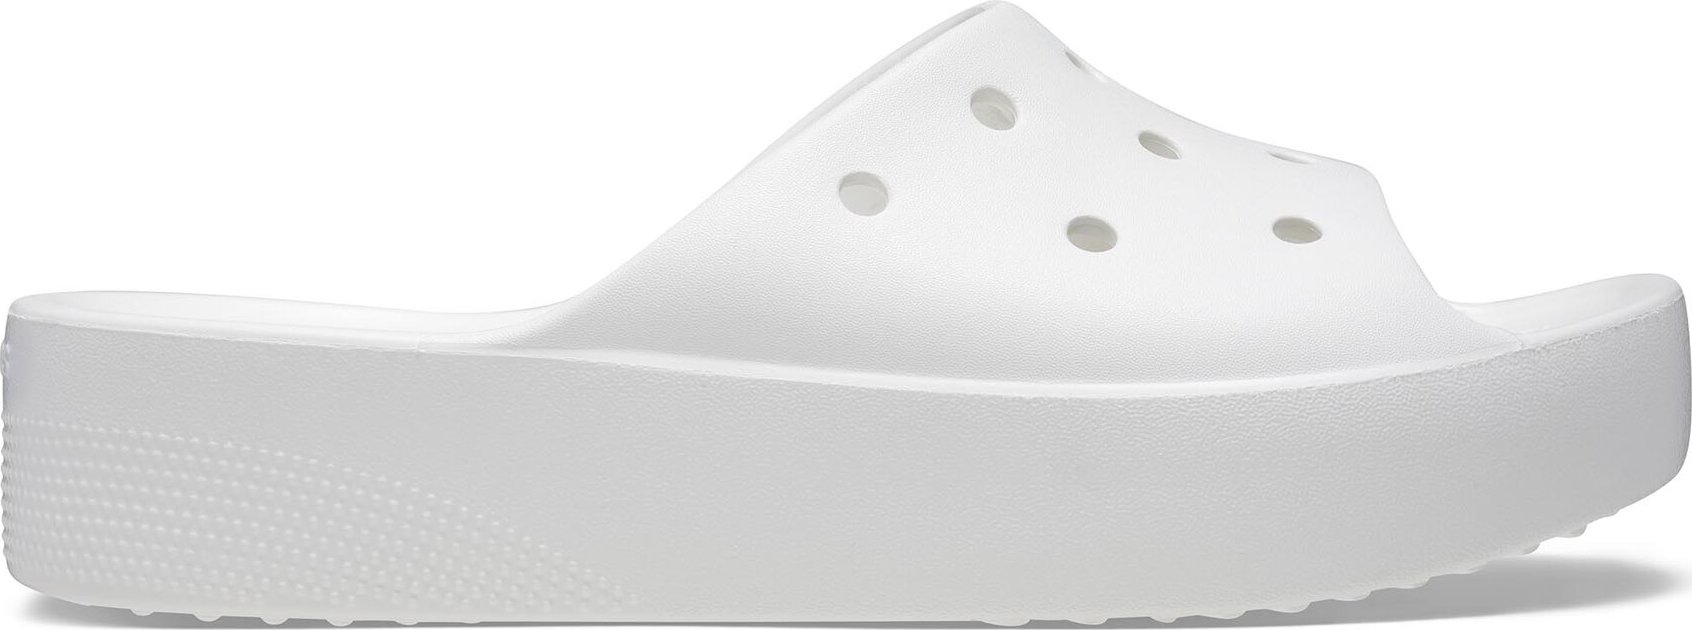 Nazouváky Crocs Classic Platform Slide 208180 White 100